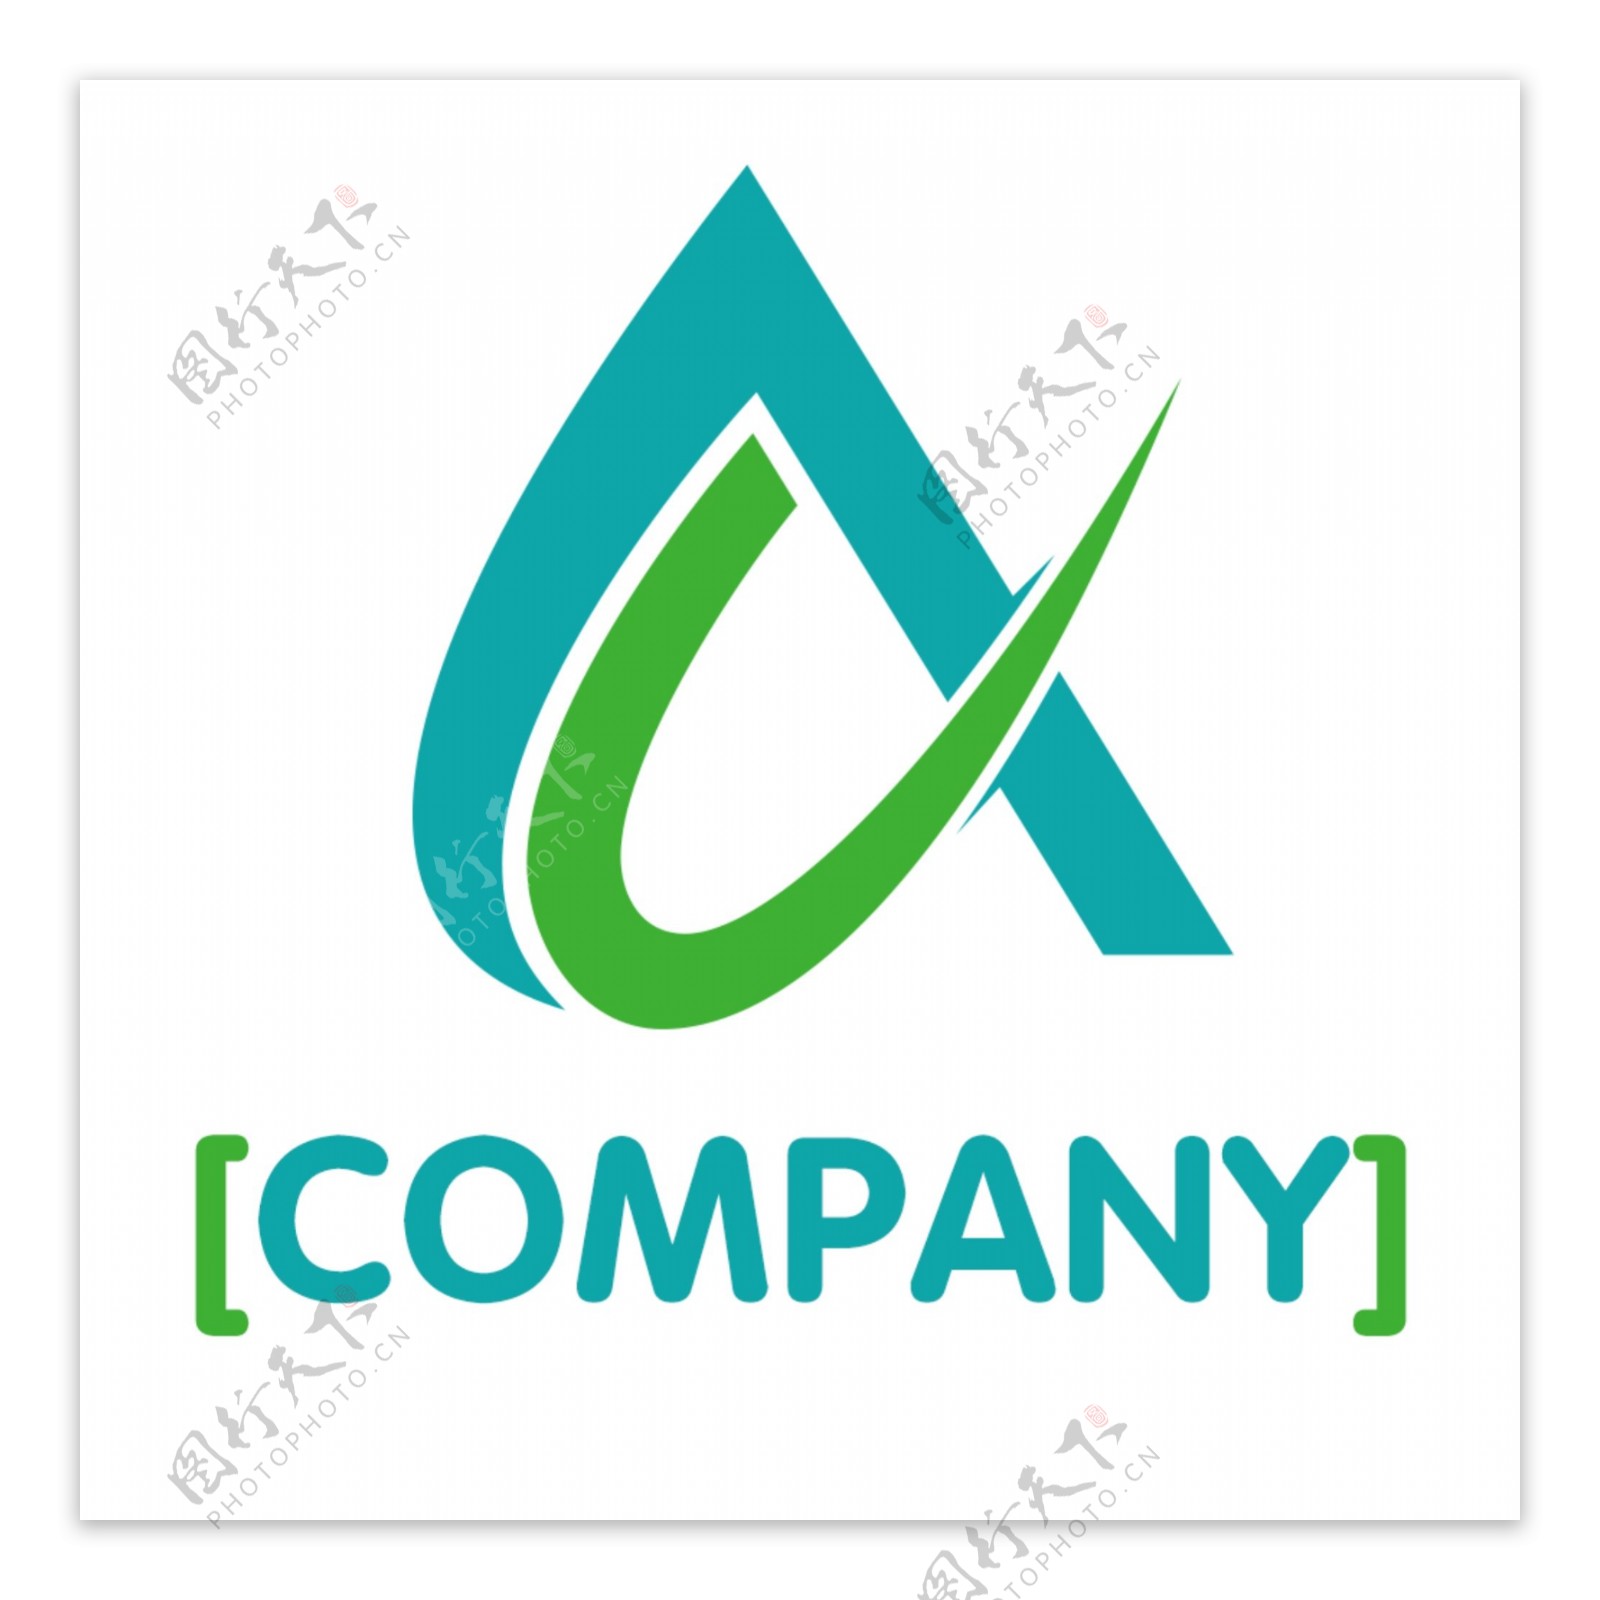 2018蓝色变形公司logo模板